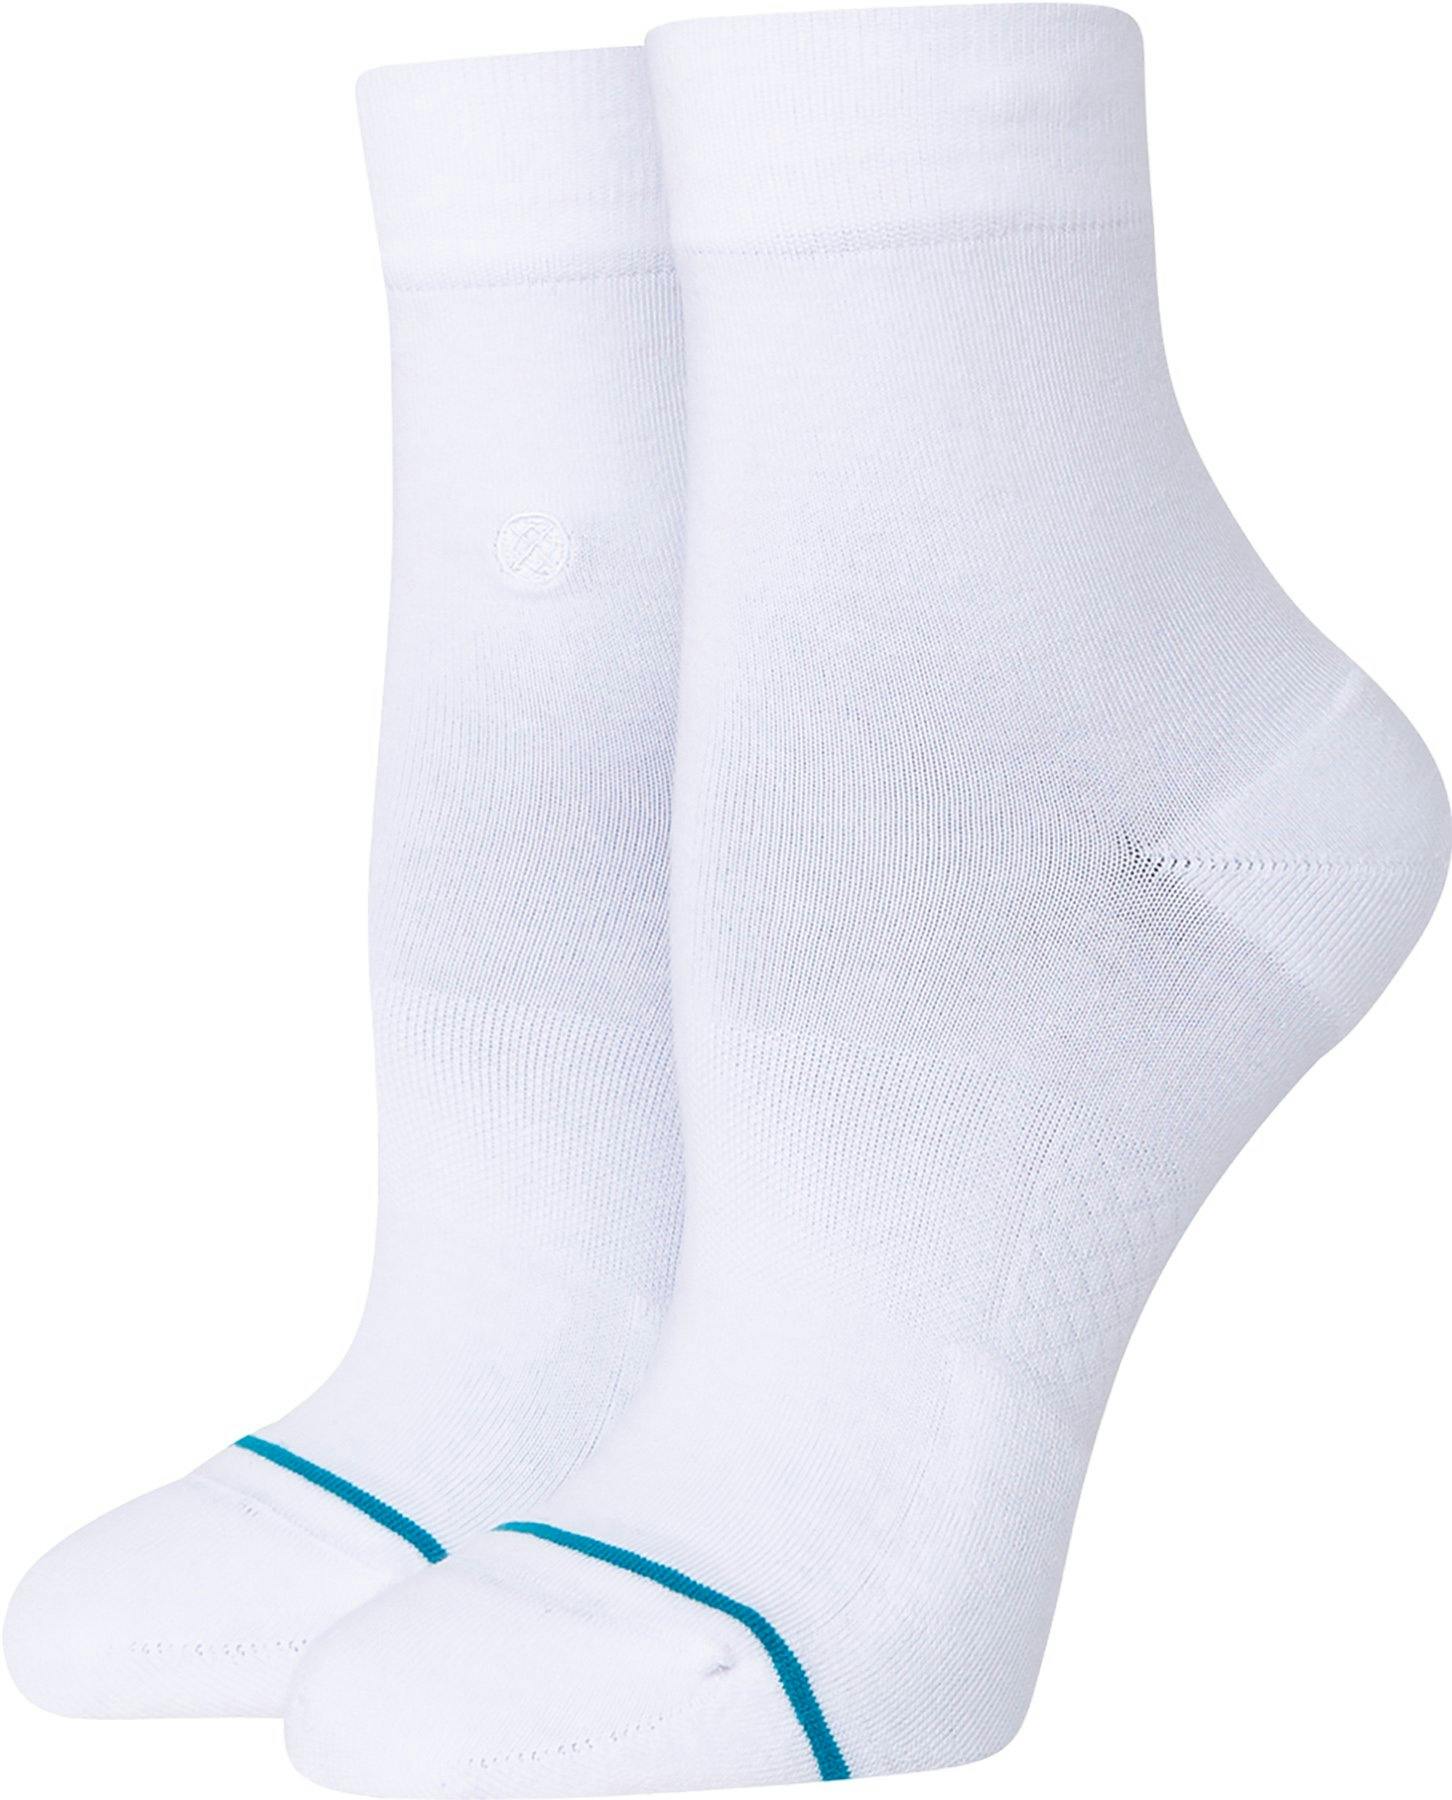 Product image for Lowrider Quarter Socks - Women's